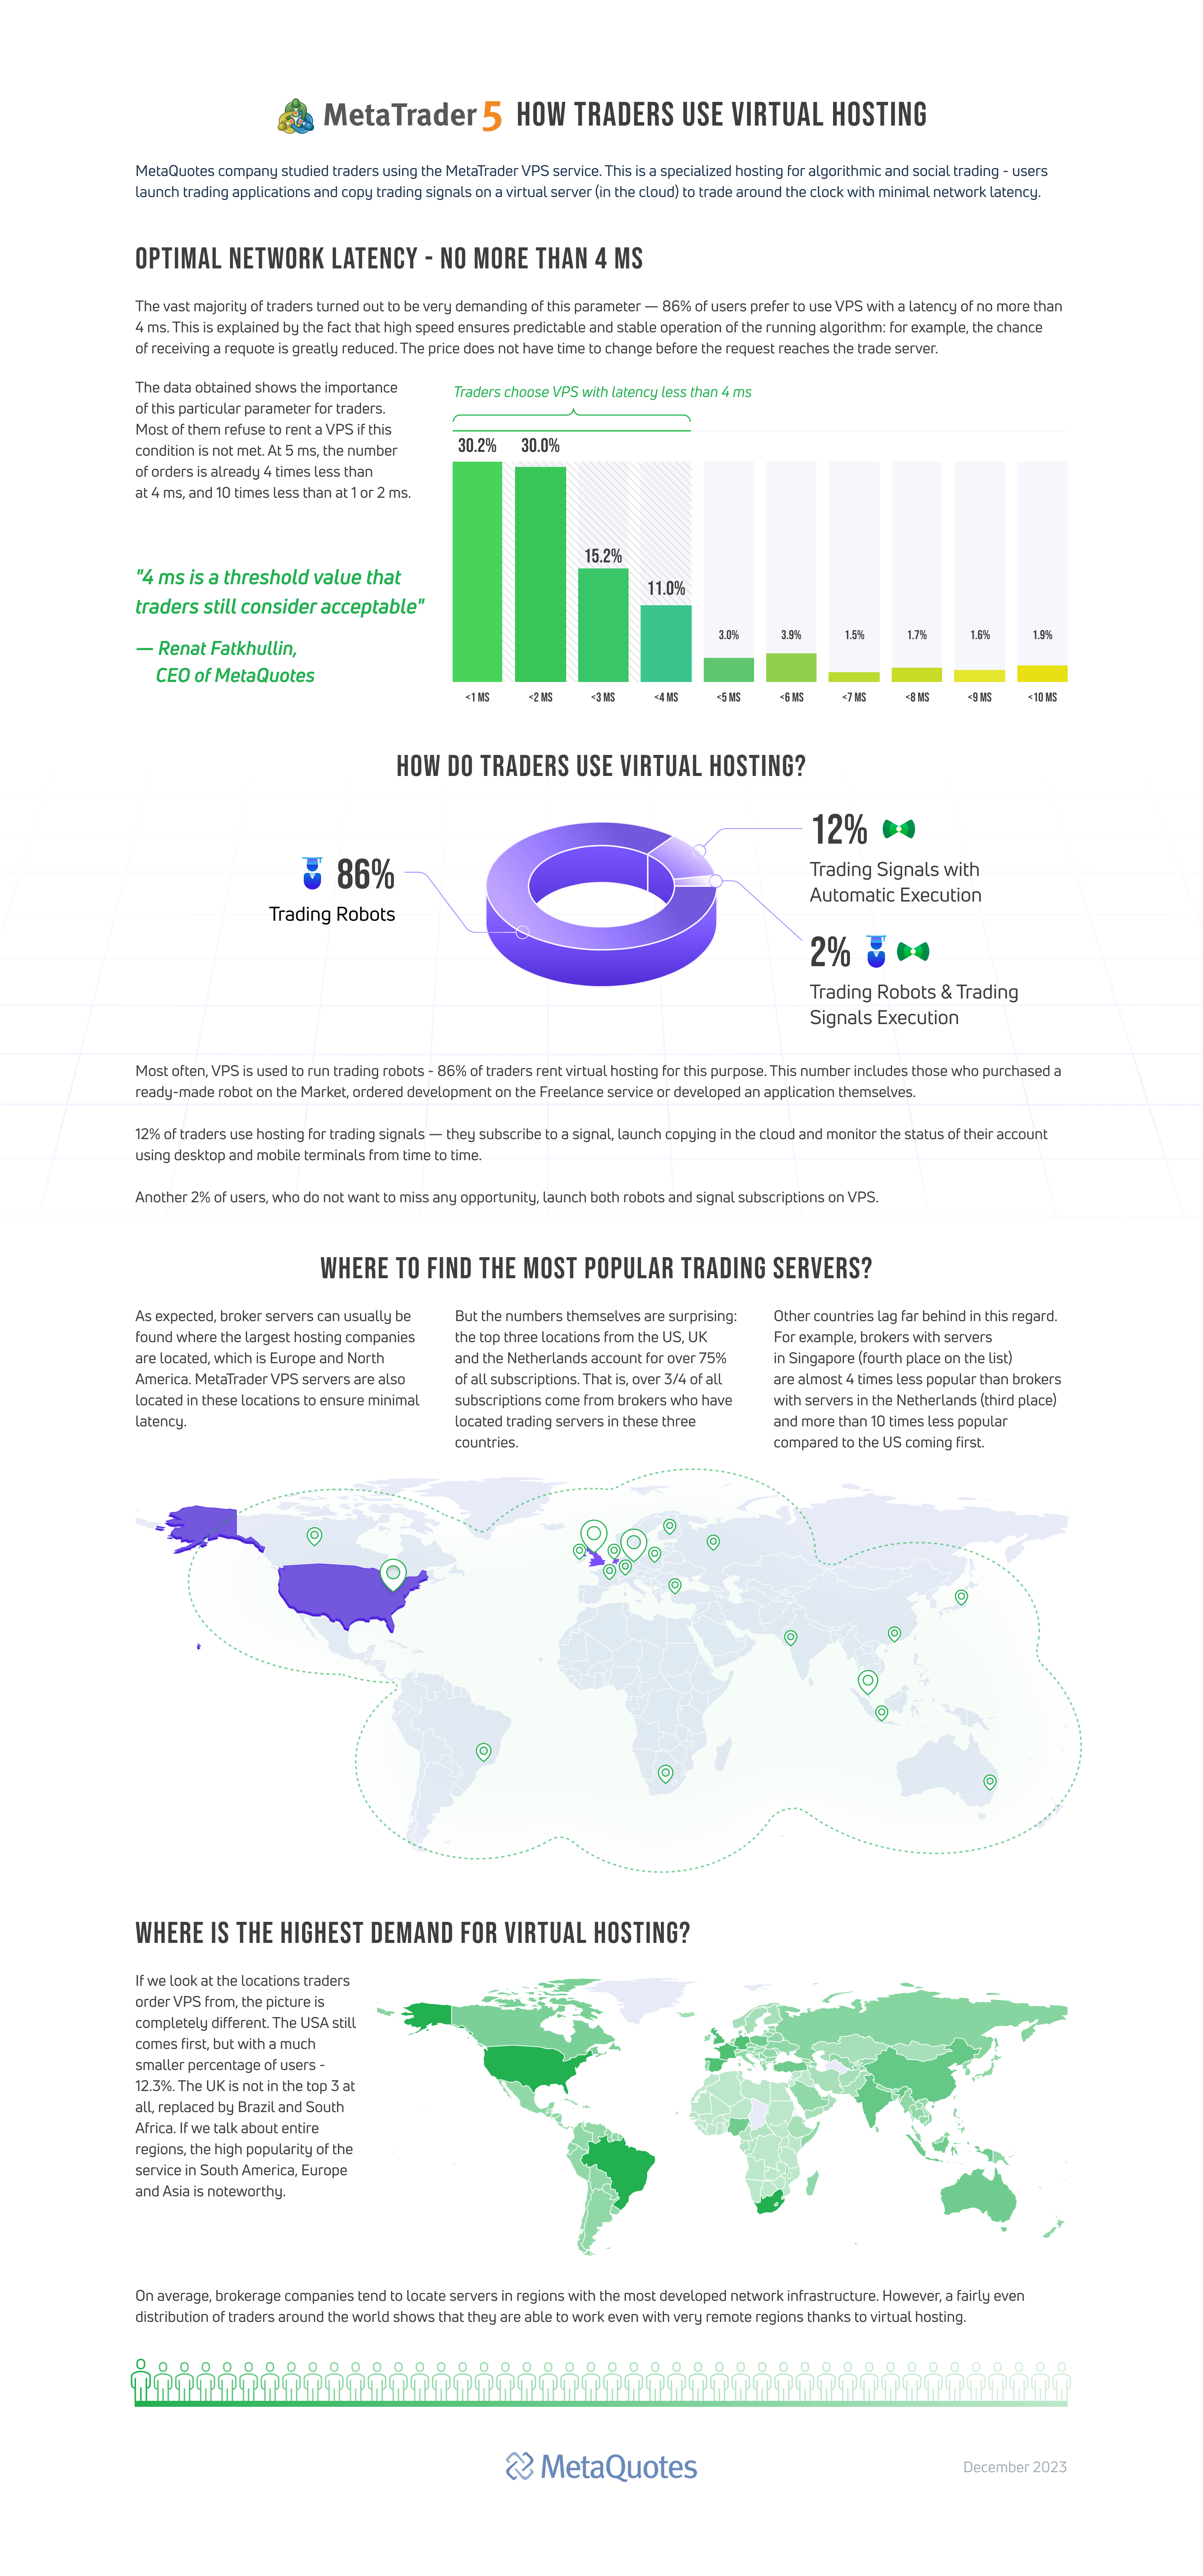 Die Ergebnisse wurden in Infografiken zusammengefasst, um einen umfassenden Überblick über die Nutzer zu geben